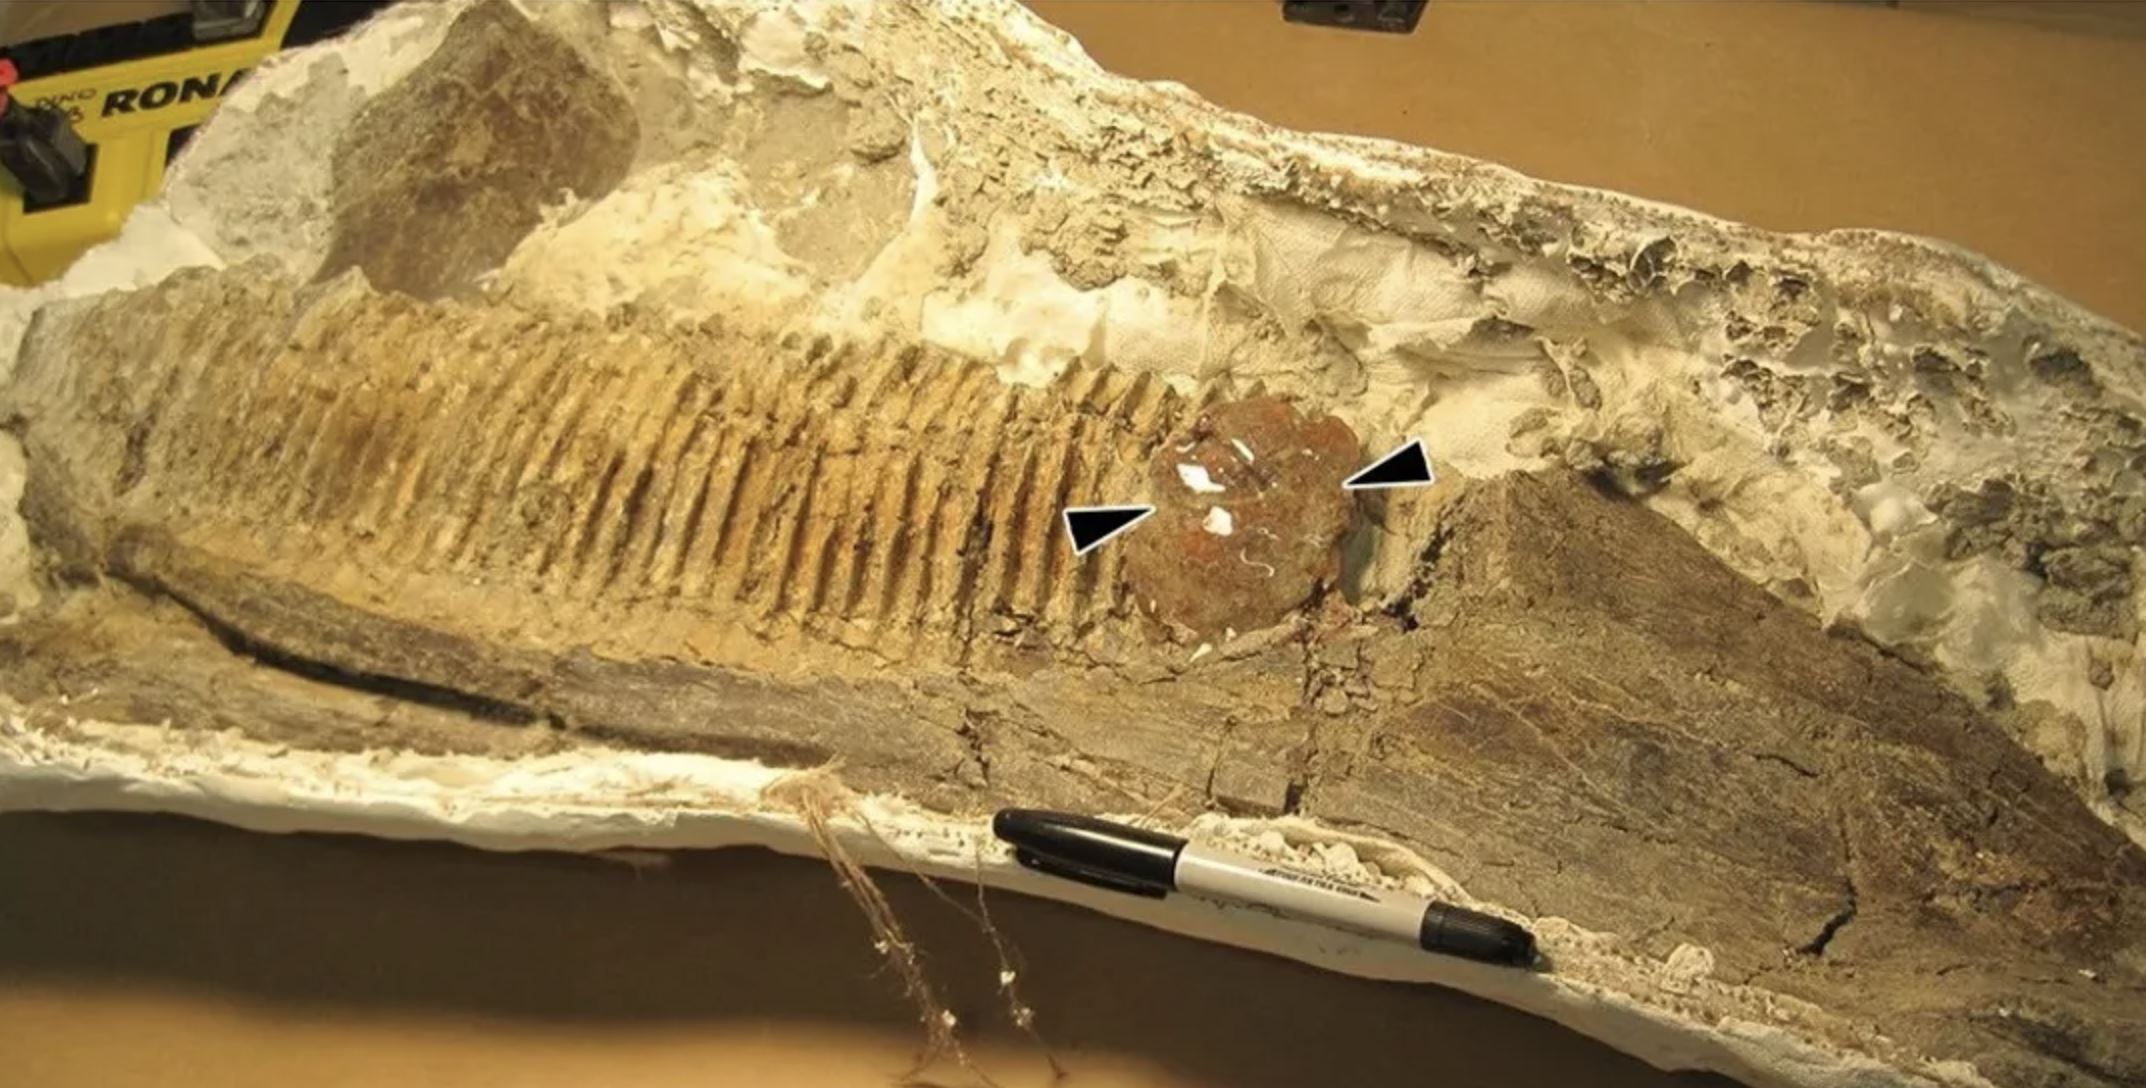 Pronađen insekt zarobljen 75 milijuna godina u jantaru na čeljusti dinosaura. Zasluge: McKellar et al., Scientific Reports, 2019.